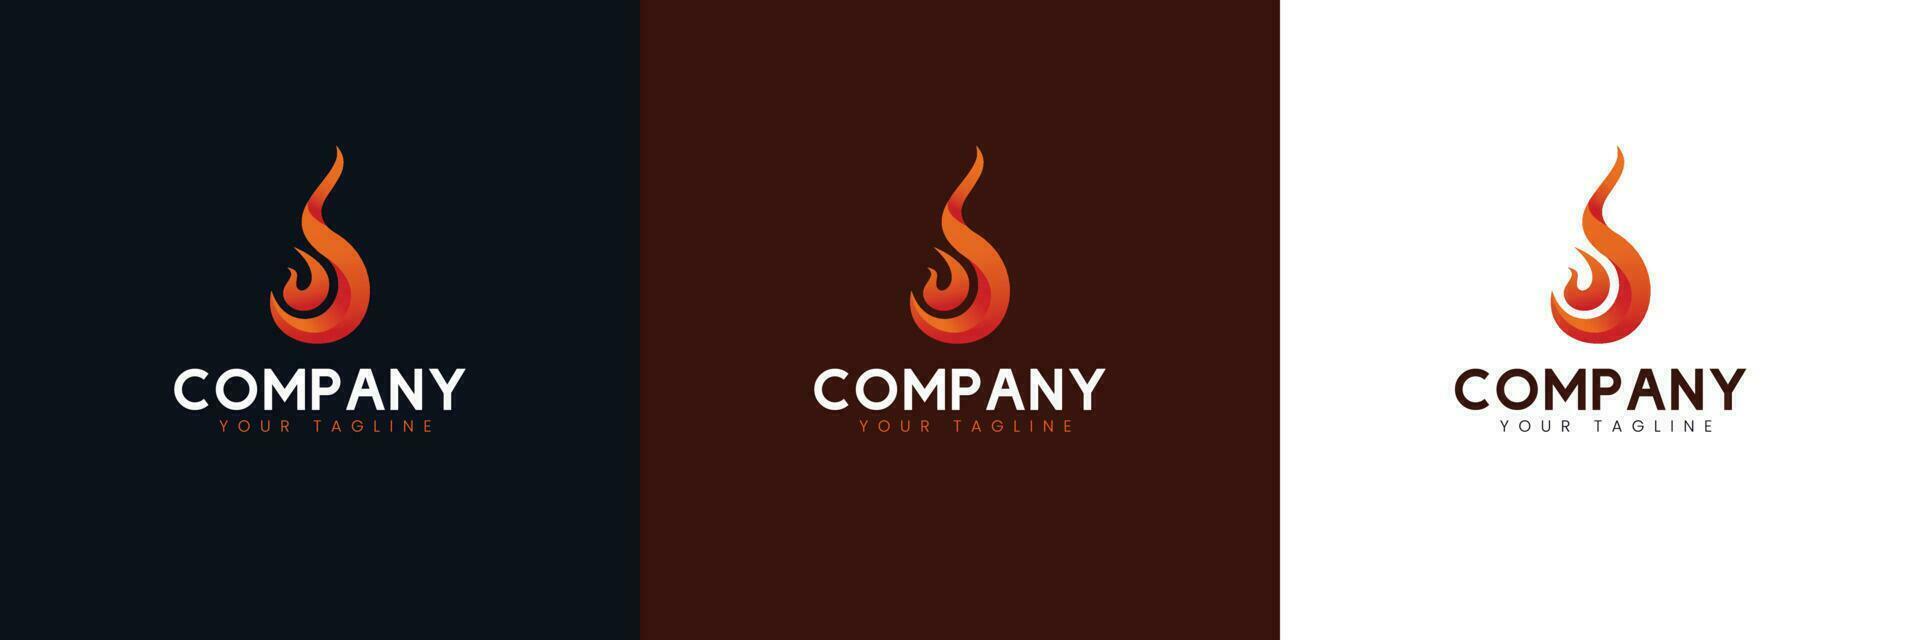 llameante fuego logo colocar, adecuado para empresas en el campos de fuego, juegos, marca camisetas, vídeo fabricante, etc. vector